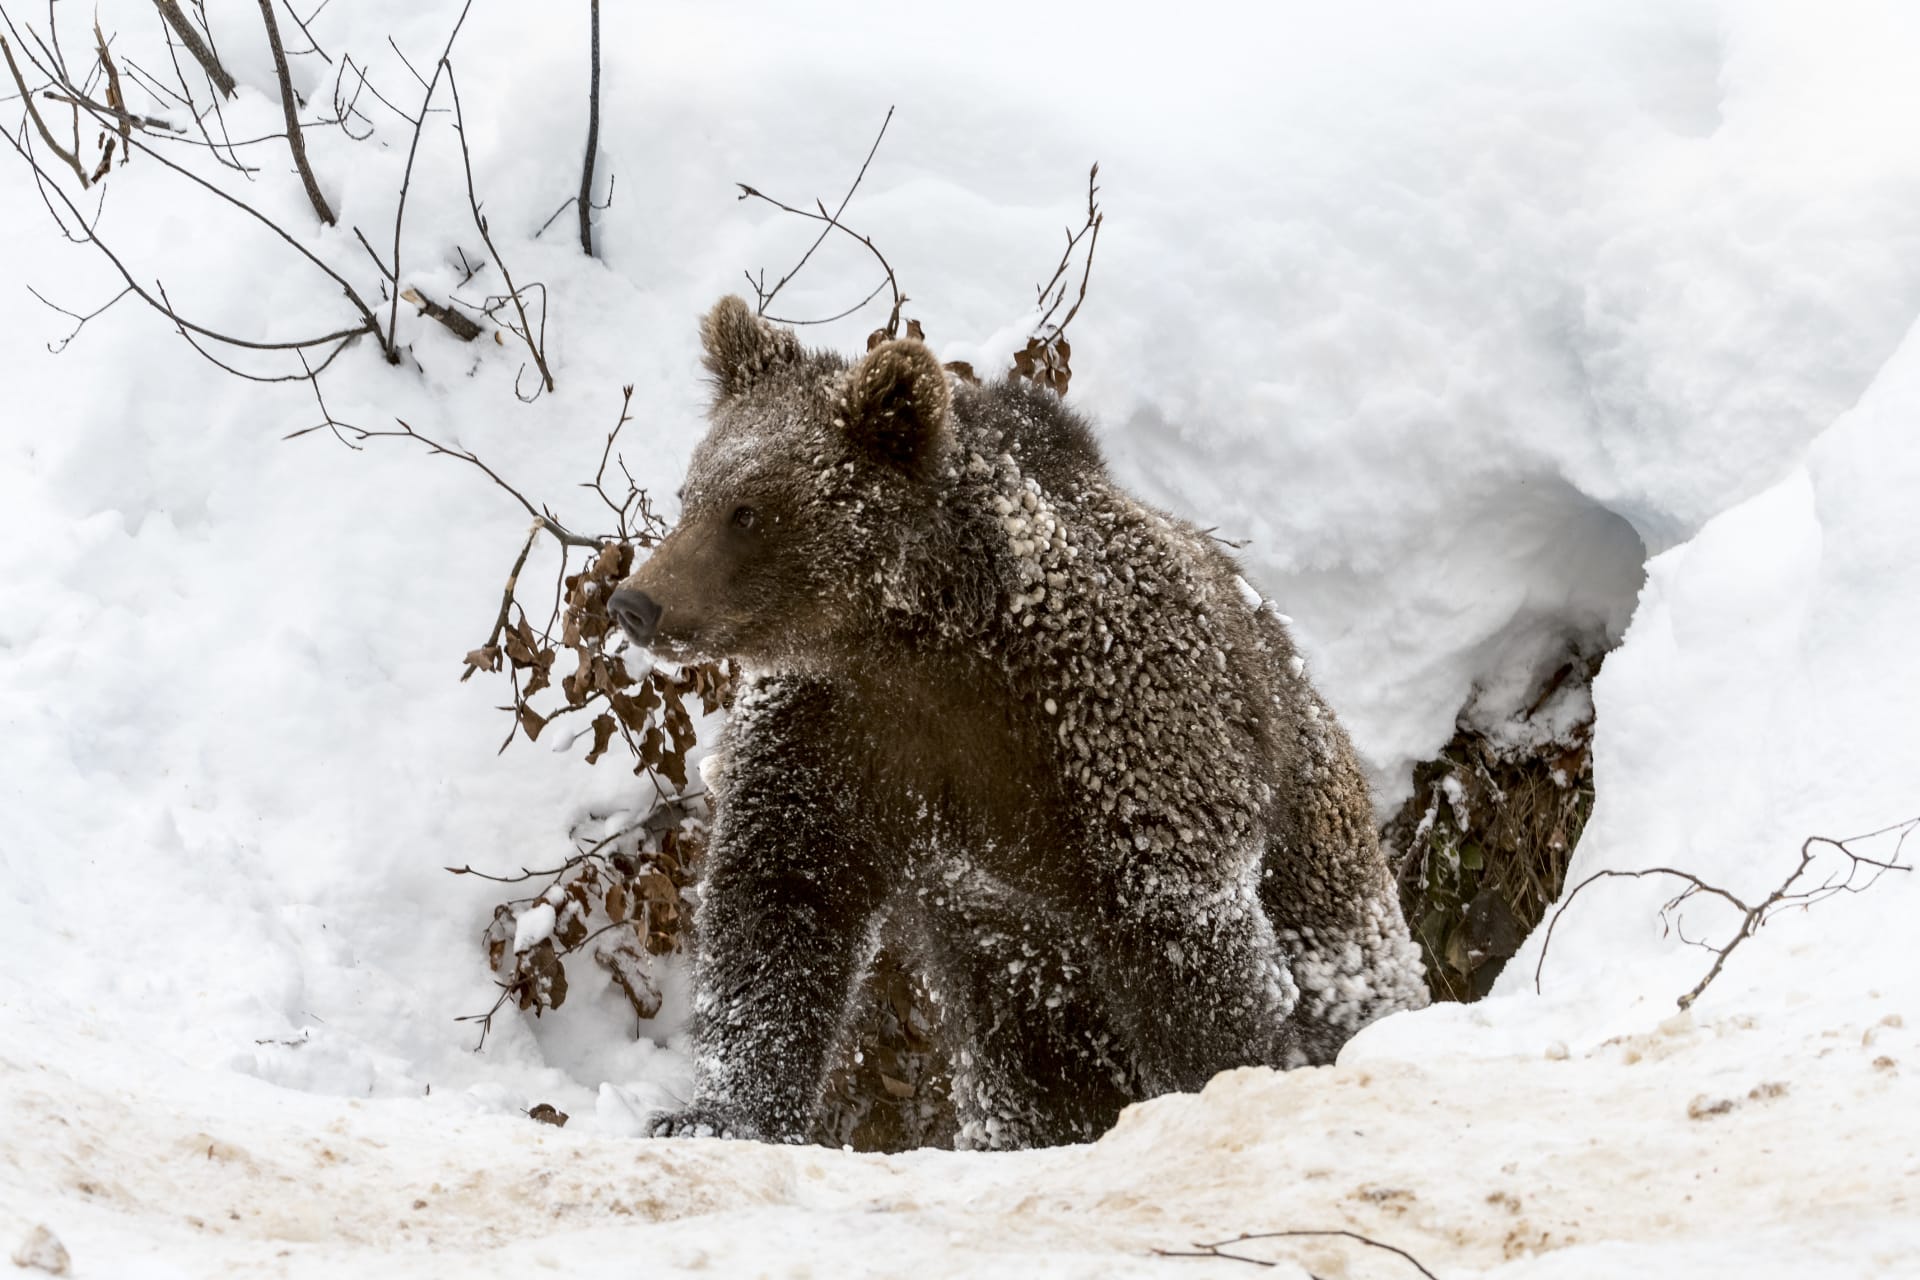 Po dobu zimního spánku je medvěd schopen přijímat podněty z okolí (hlavně zvukové), které ho mohou ze spánku lehce probudit